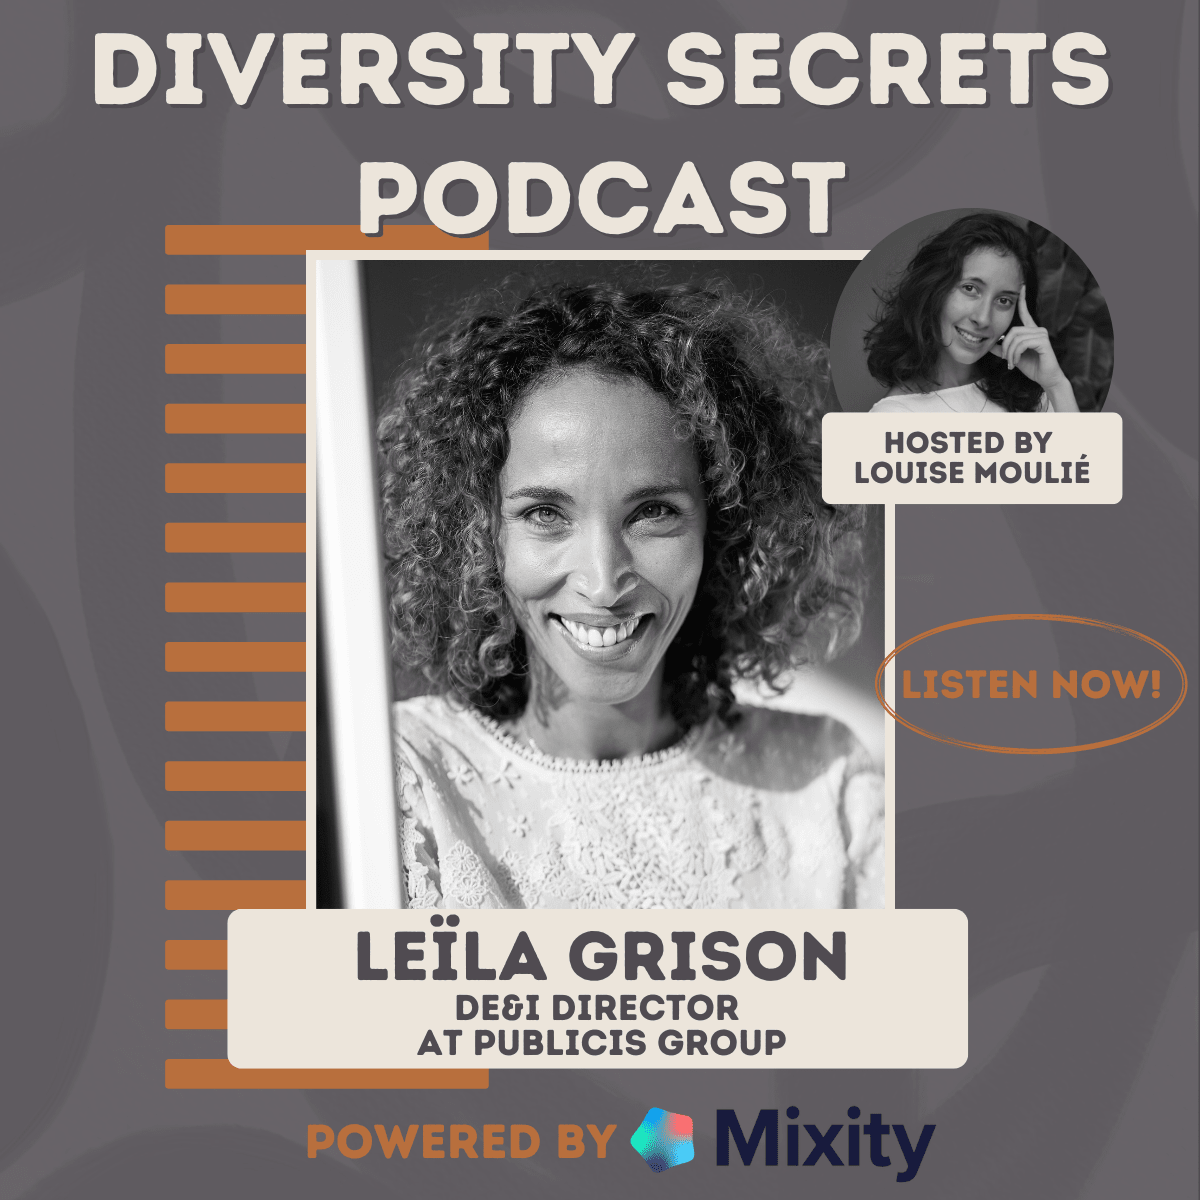 Meet Leïla Grison in Diversity secrets Podcast